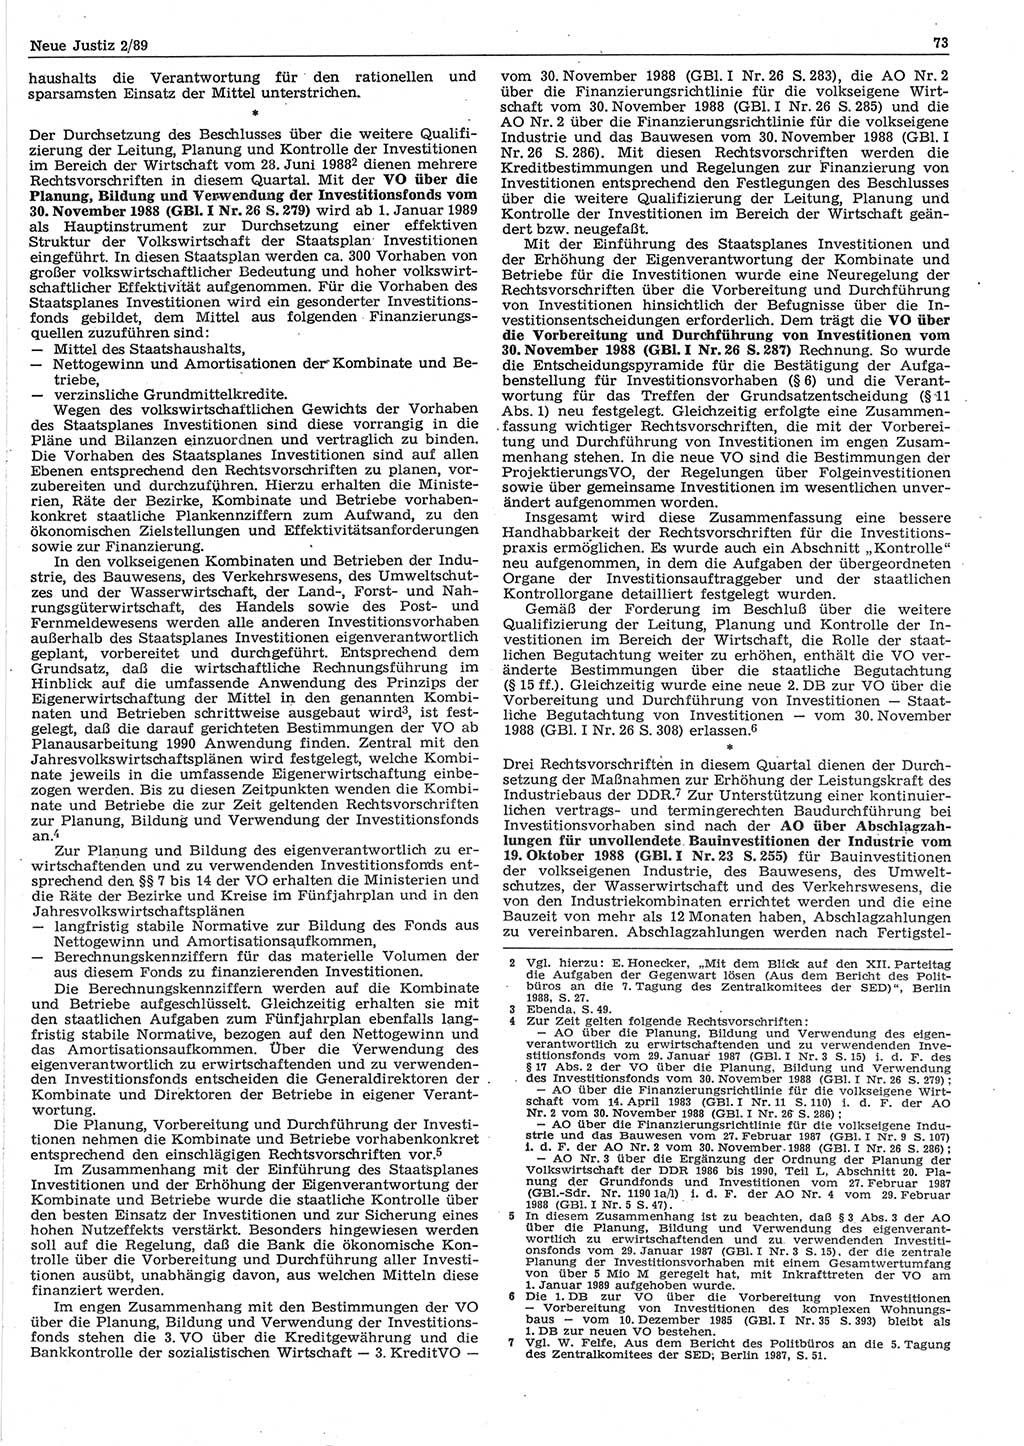 Neue Justiz (NJ), Zeitschrift für sozialistisches Recht und Gesetzlichkeit [Deutsche Demokratische Republik (DDR)], 43. Jahrgang 1989, Seite 73 (NJ DDR 1989, S. 73)